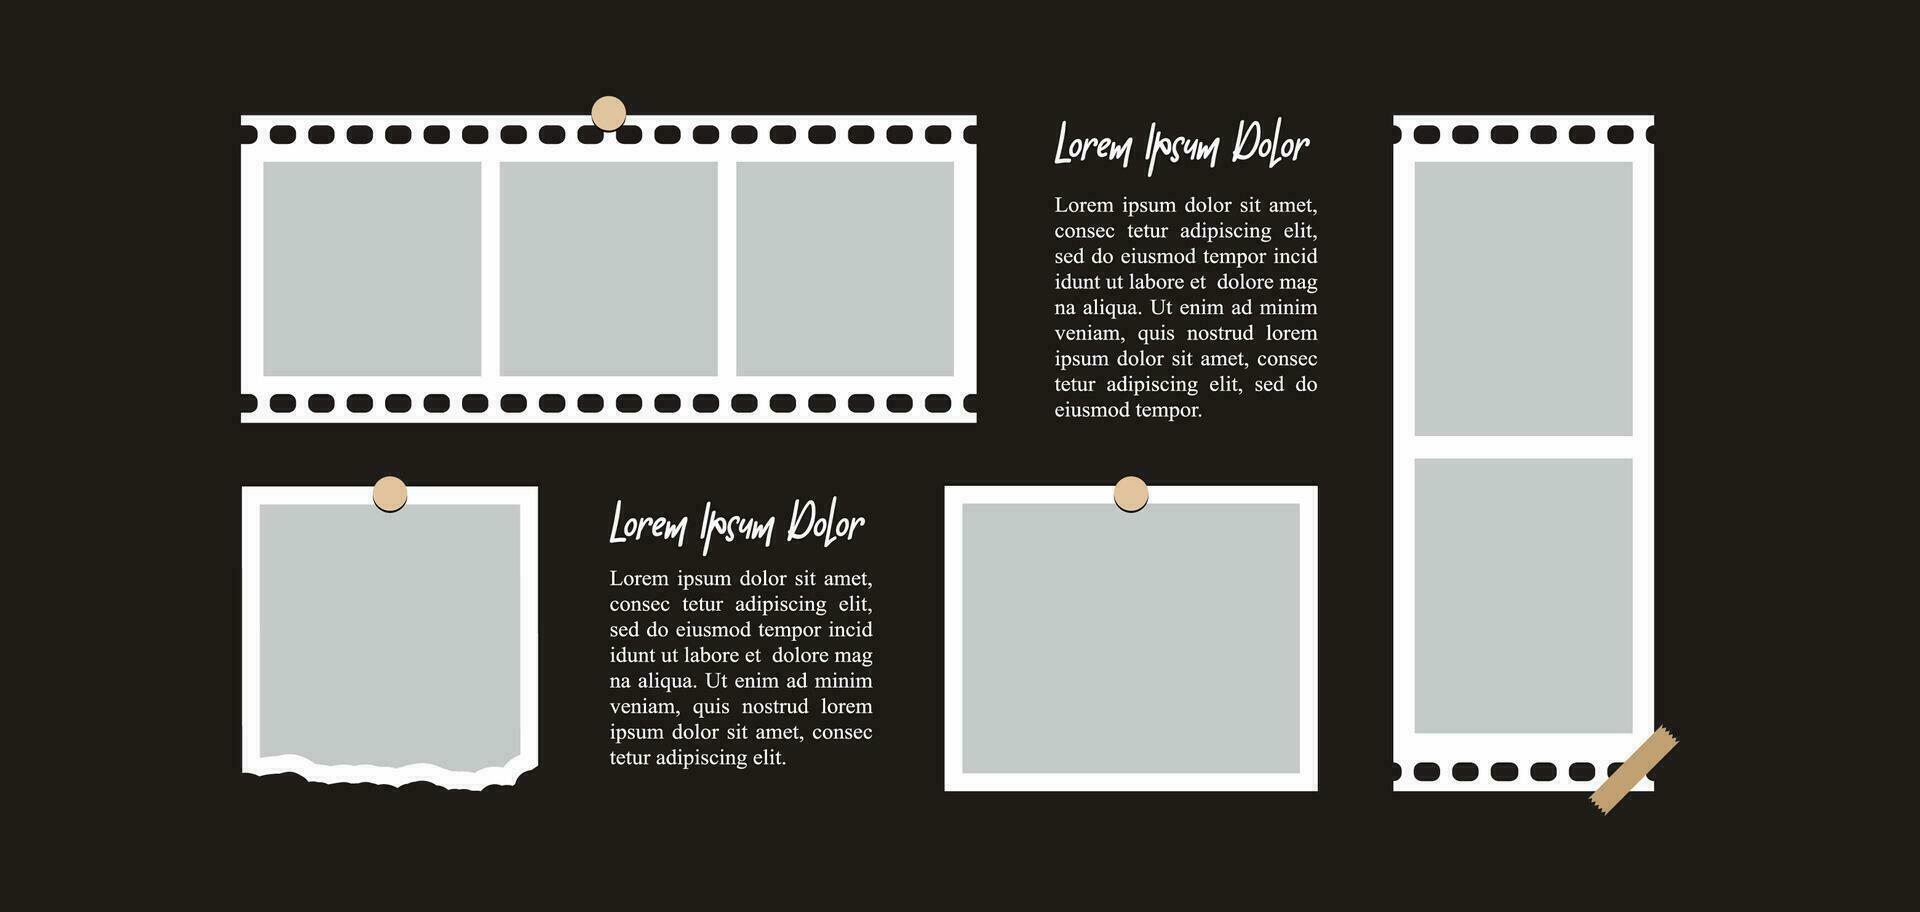 Bilder oder Fotos Rahmen Collage. Comic-Seitenraster-Layout abstrakte Fotorahmen und digitale Fotowandvorlage vektor